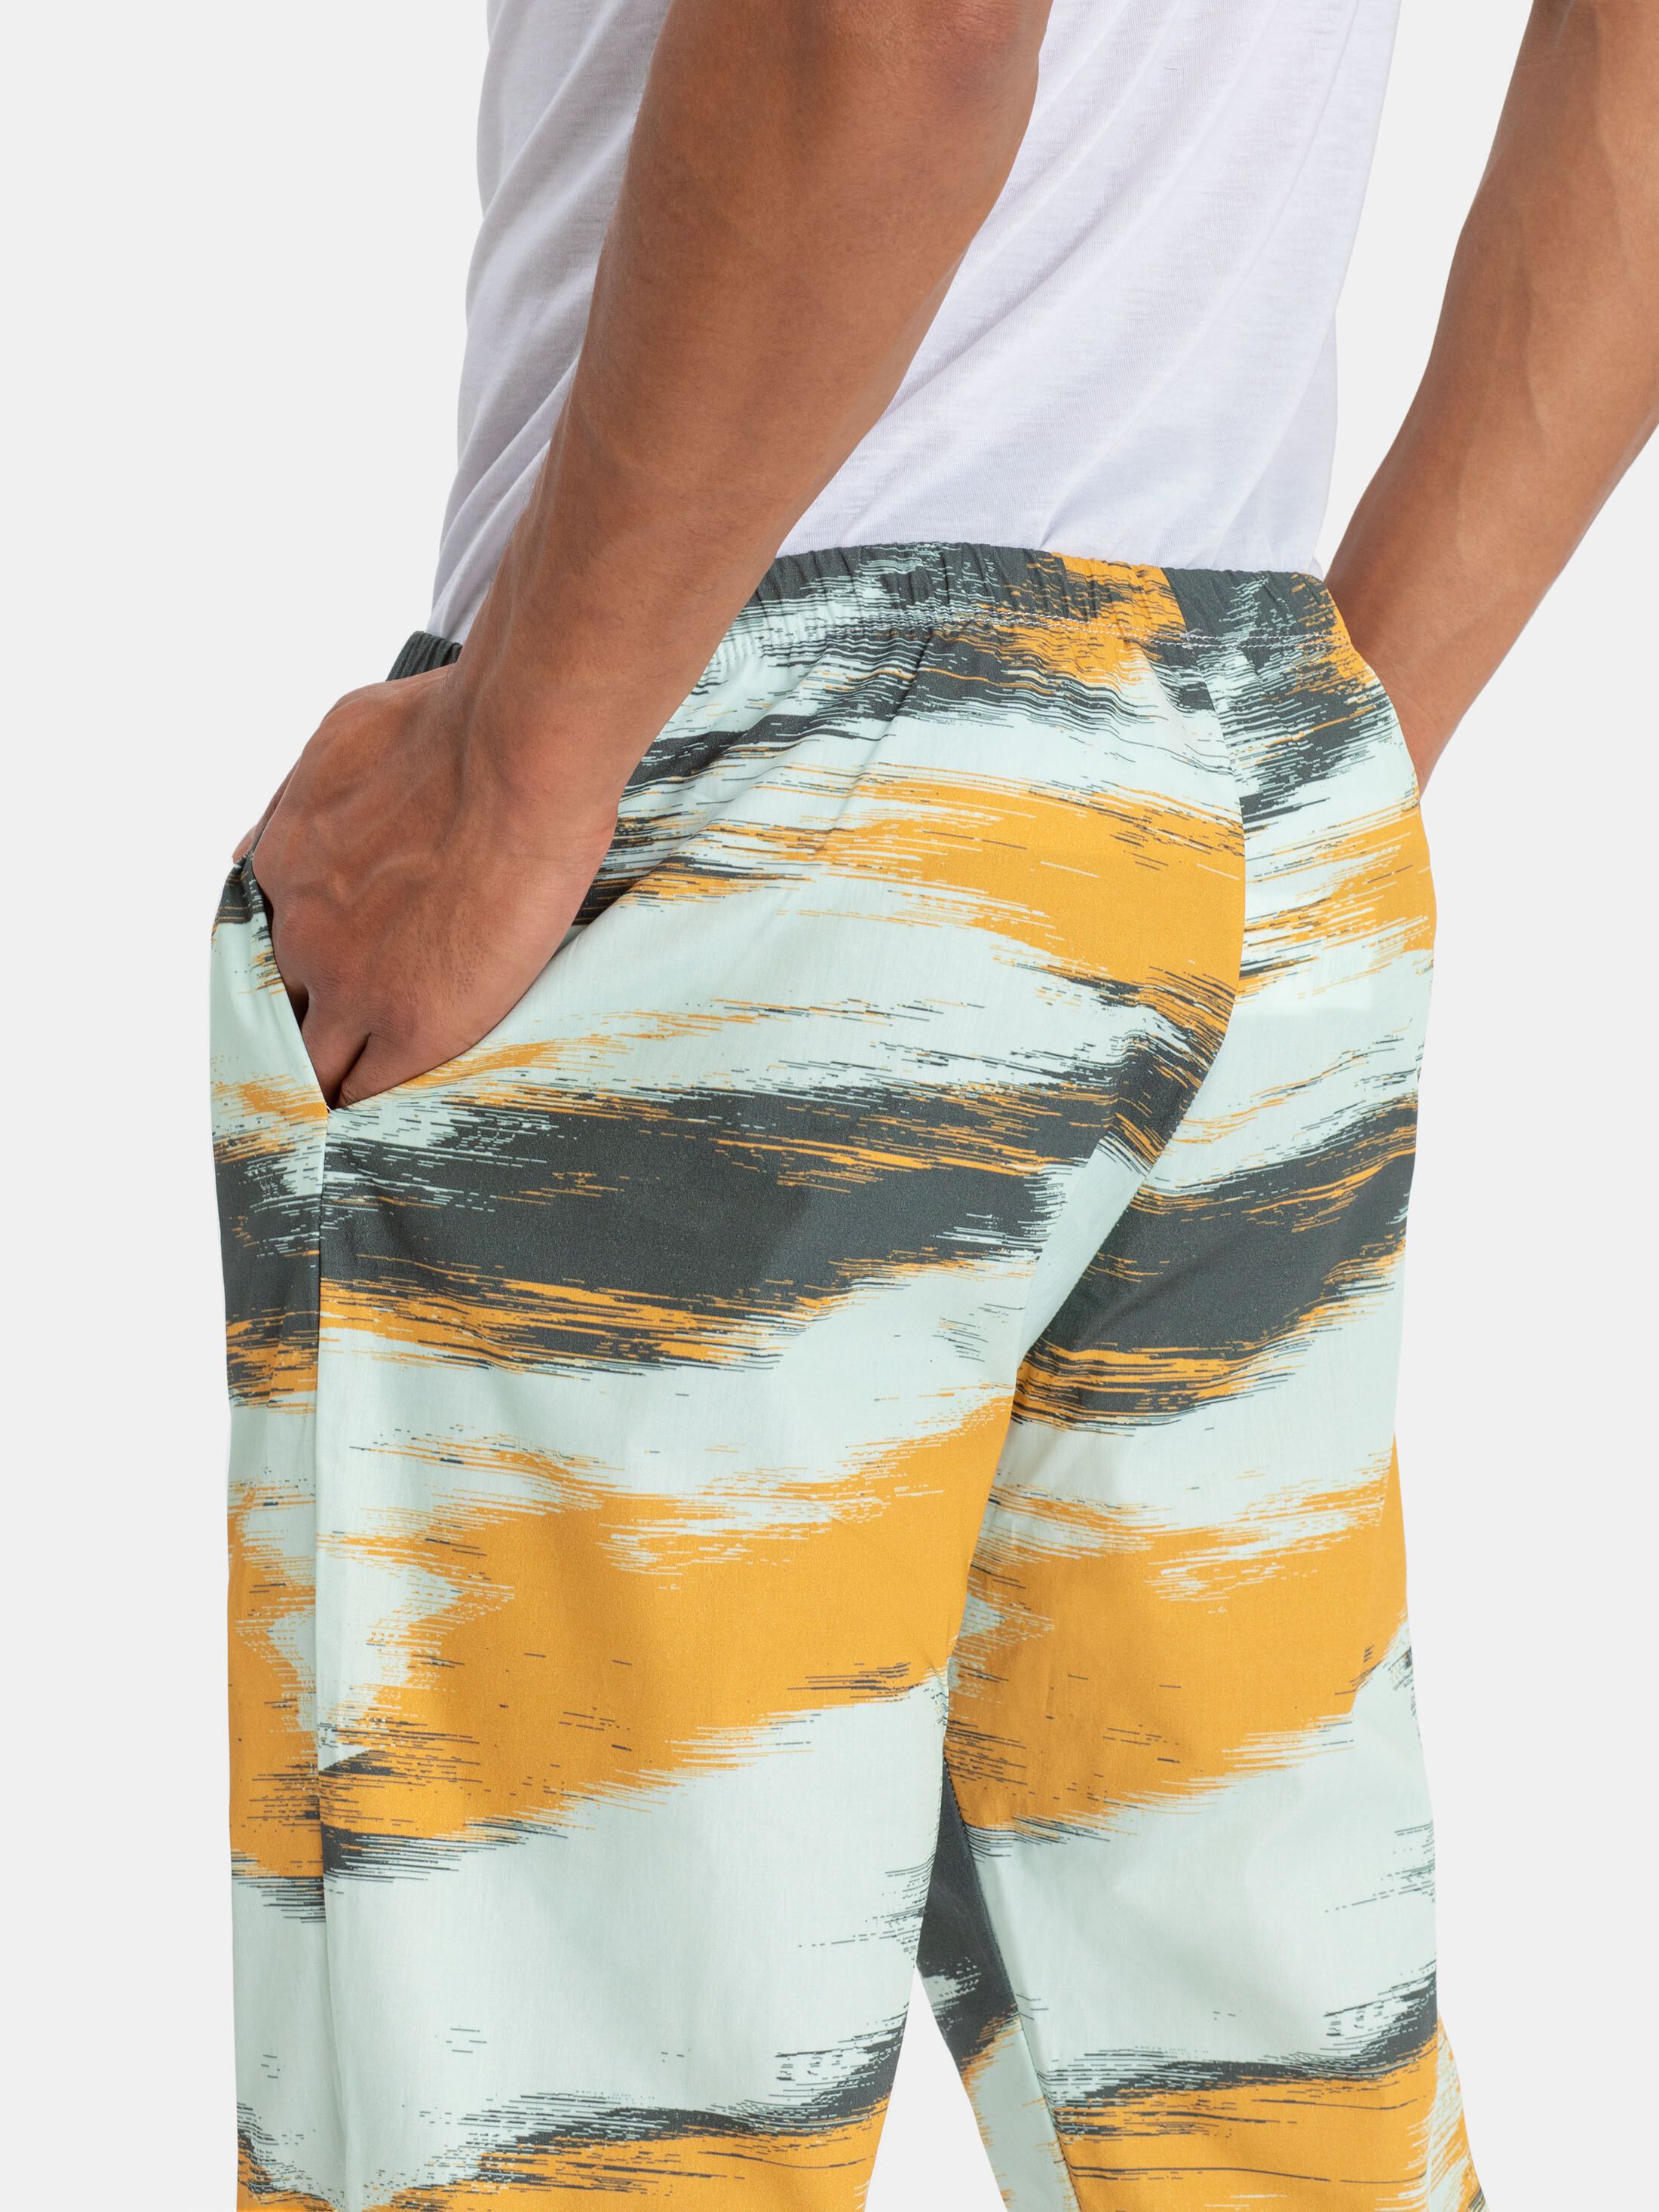 Men's Pyjama Bottoms design your own